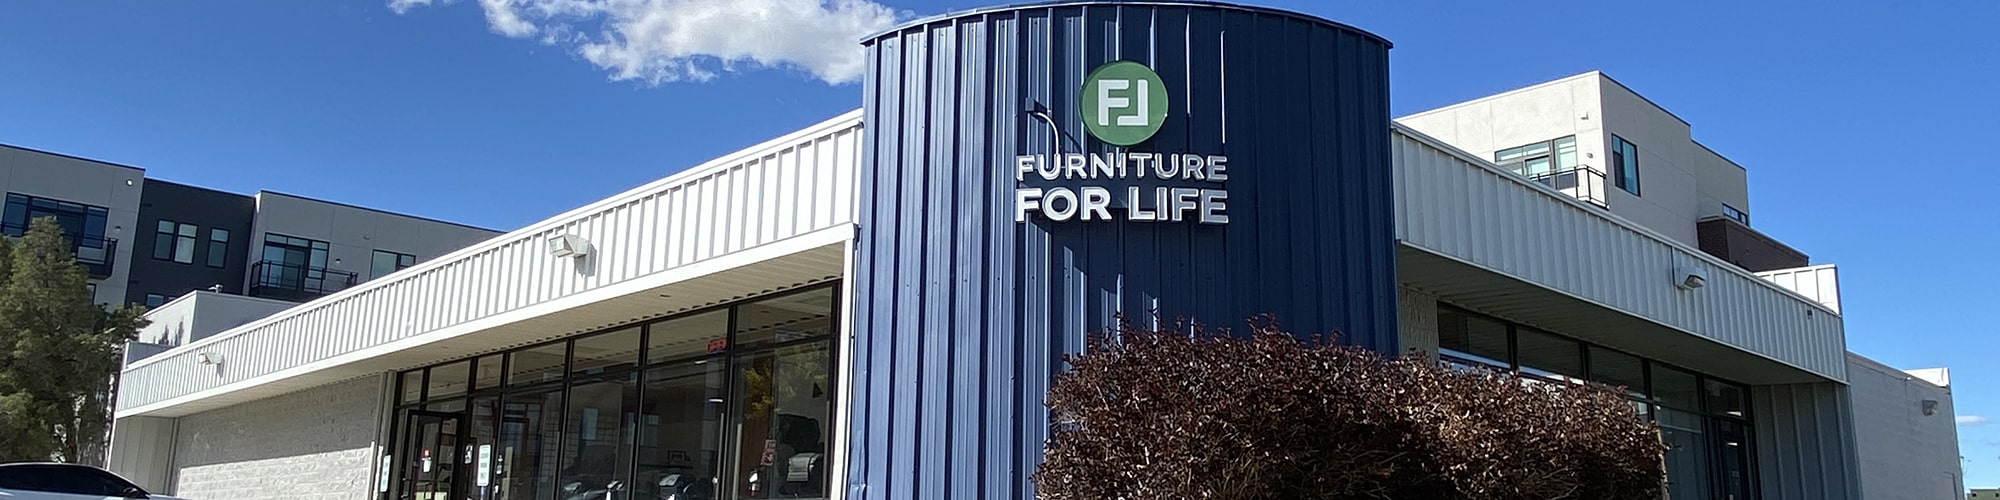 furniture for life boulder exterior